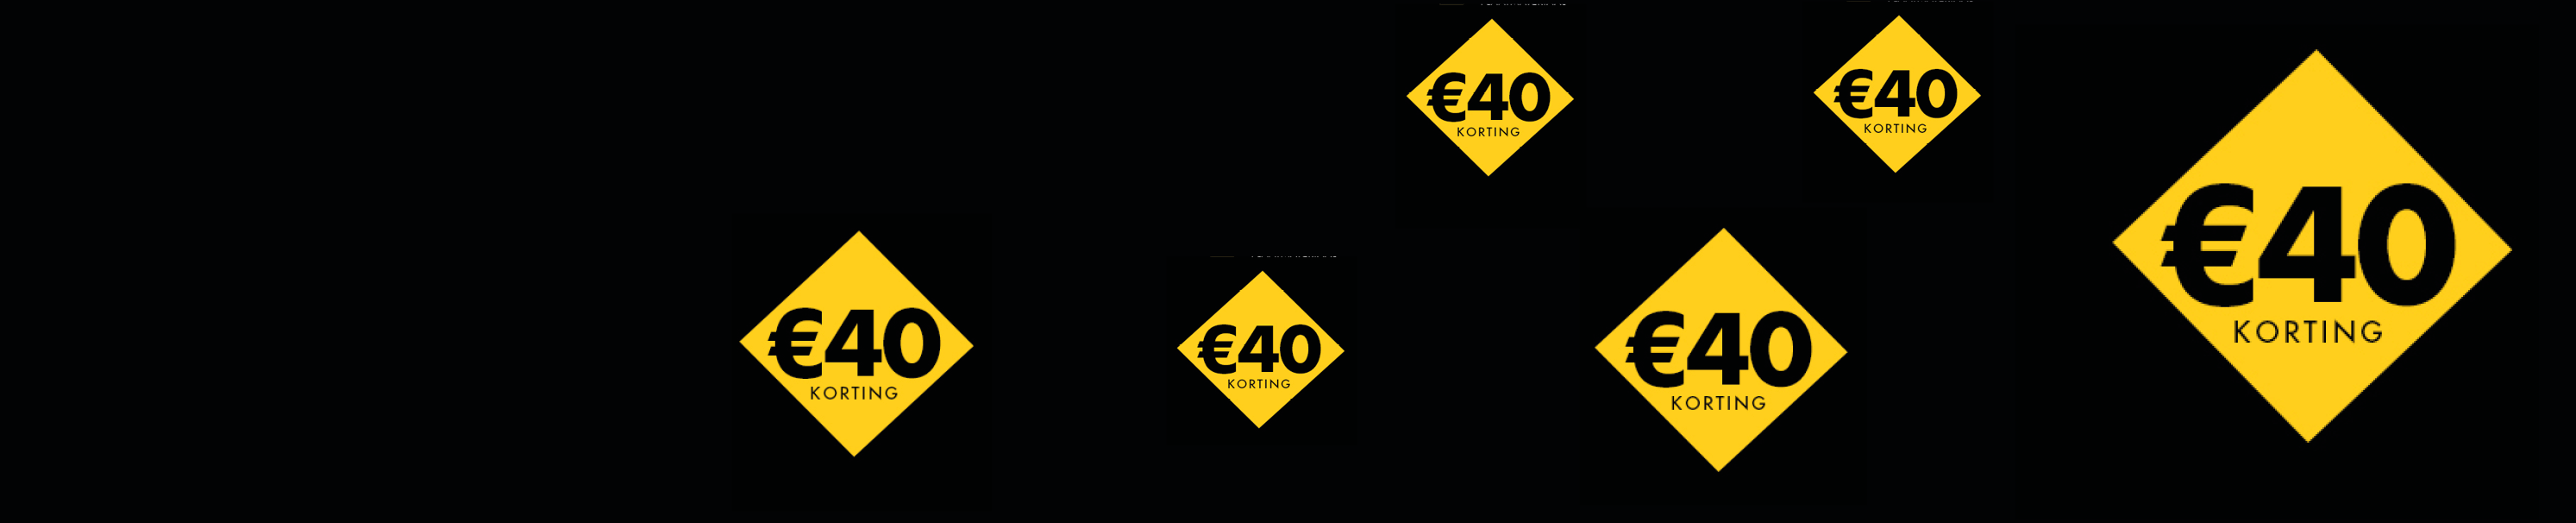 Als relatiegeschenk en jubileumcadeau geven wij u €40,00 korting bij bestellingen in januari! Zie voorwaarden